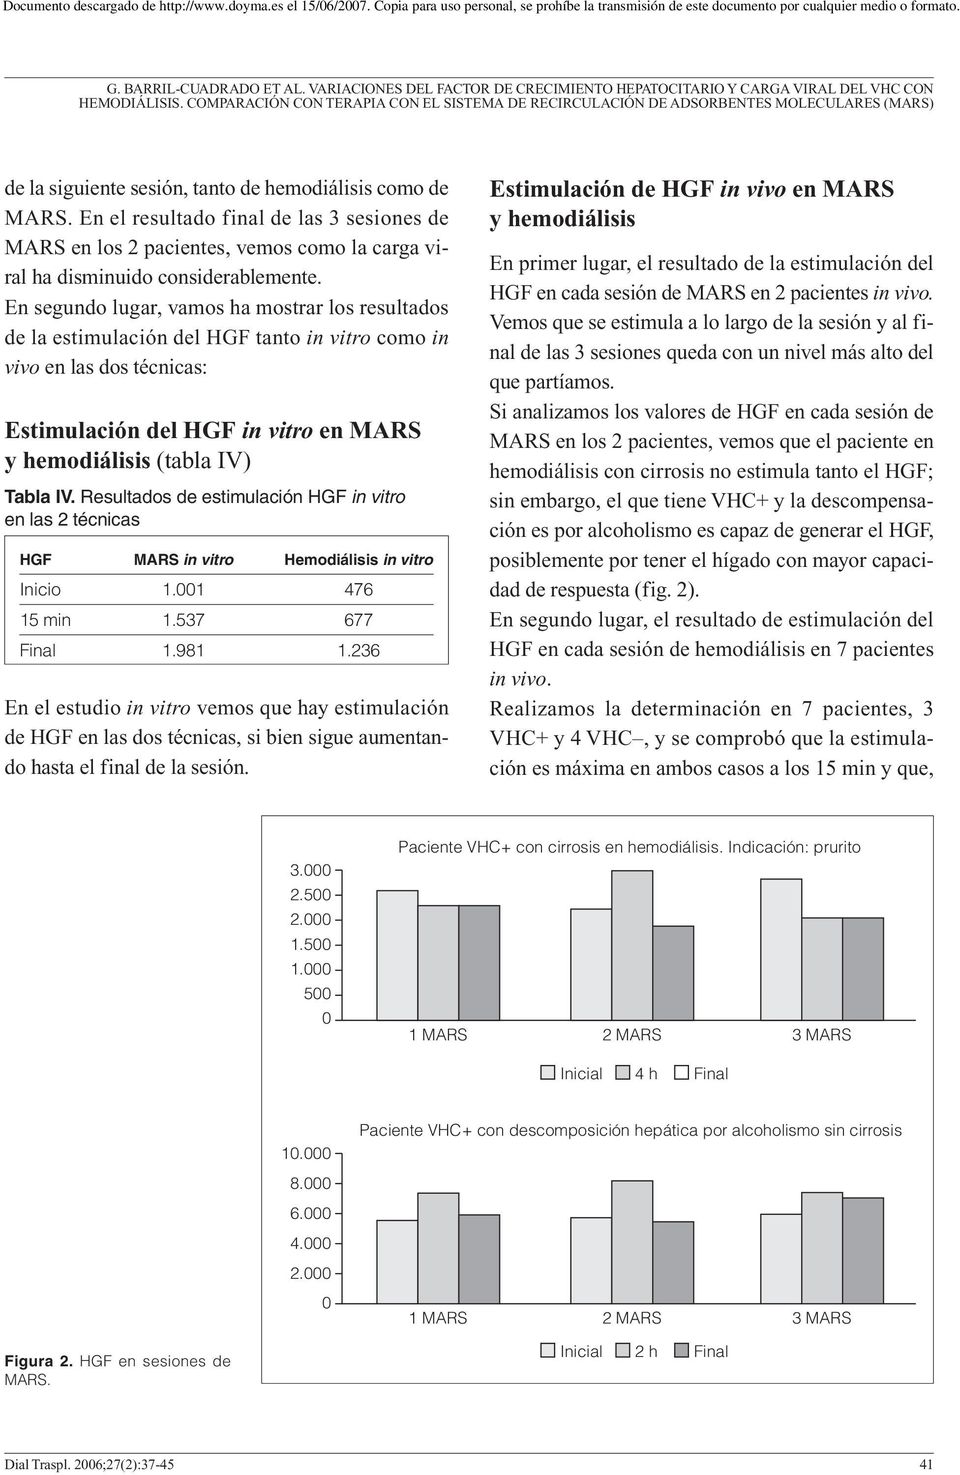 Resultados de estimulación HGF in vitro en las 2 técnicas HGF MARS in vitro Hemodiálisis in vitro Inicio 1.001 476 15 min 1.537 677 Final 1.981 1.